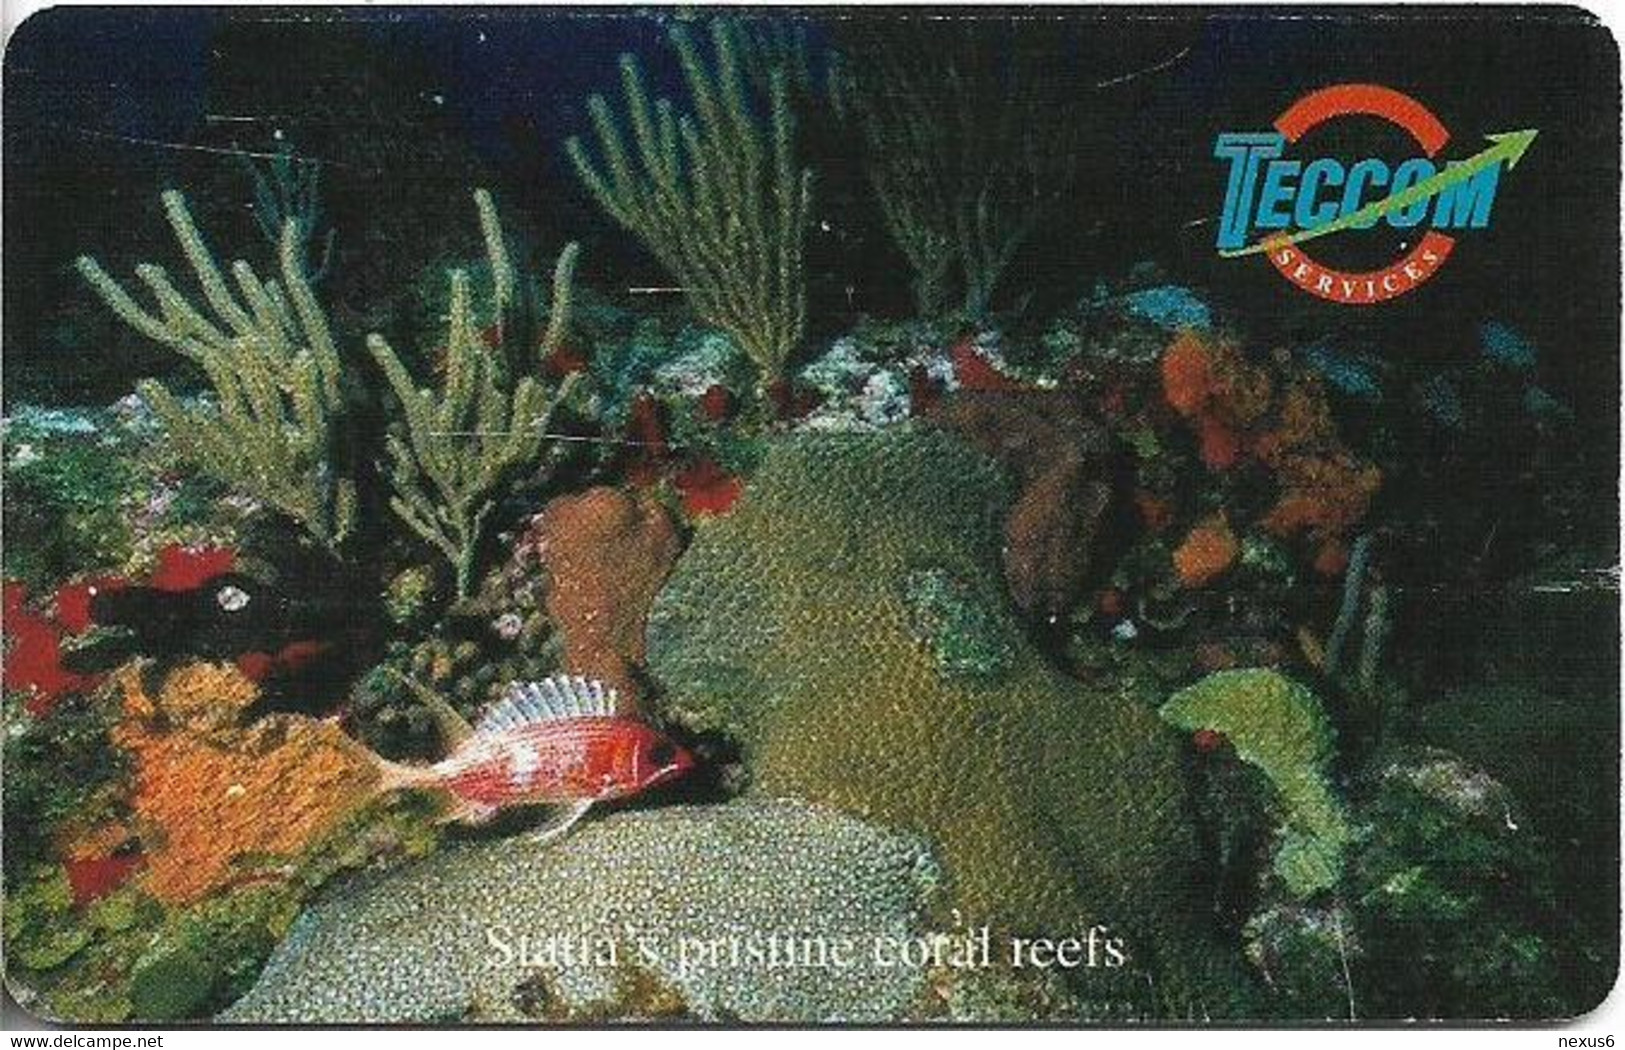 St. Eustatius (Antilles Netherlands) - Teccom (Chip) - Statia's Pristine Coral Reefs, 2000, 10$, Used - Antilles (Netherlands)